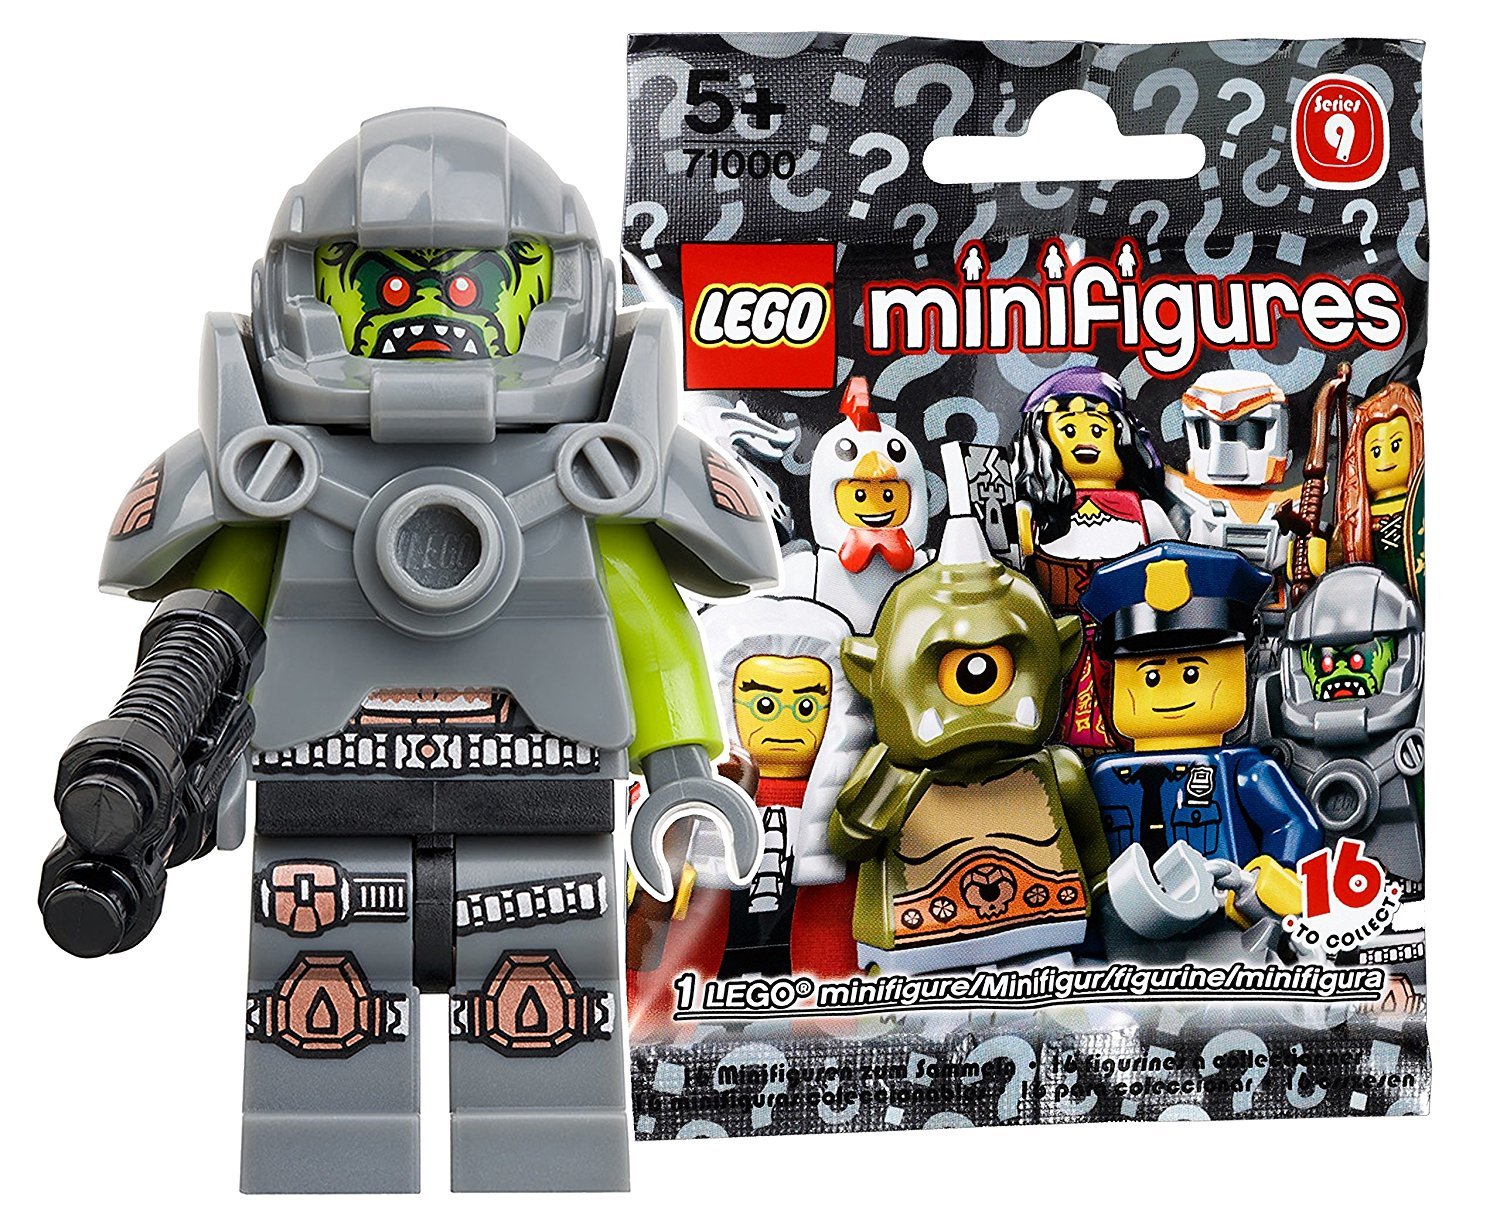 レゴ (LEGO) ミニフィギュア シリーズ9 エイリアン・アベンジャー 未開封品 (LEGO Minifigure Series9 Alien Avenger) 71000-11画像